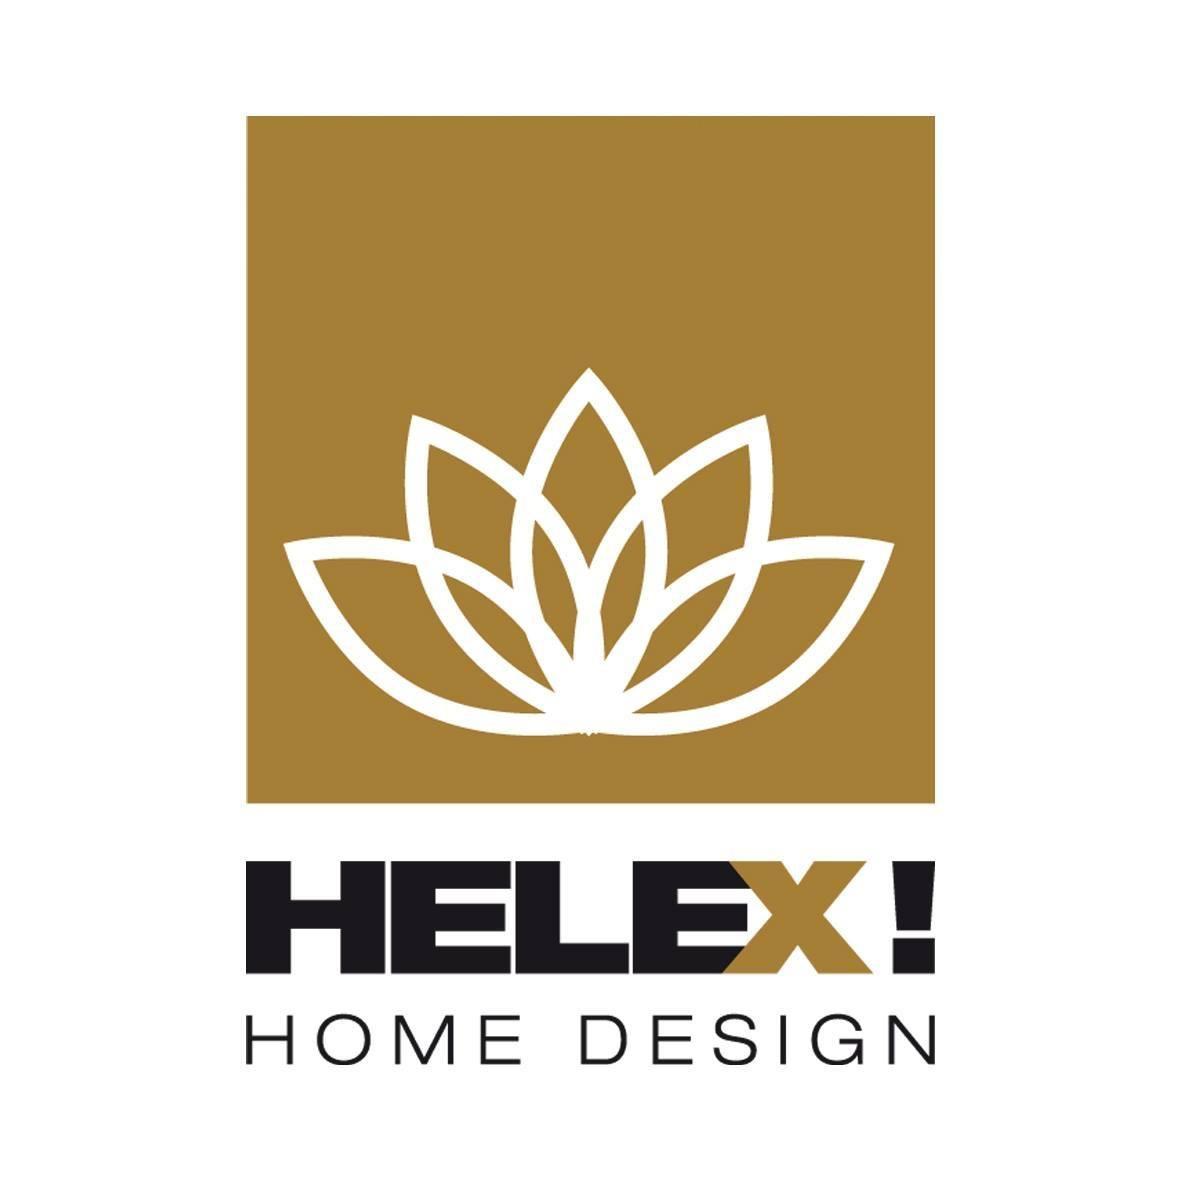 HELEX Homedesign KG Elstermann & Co. Logo